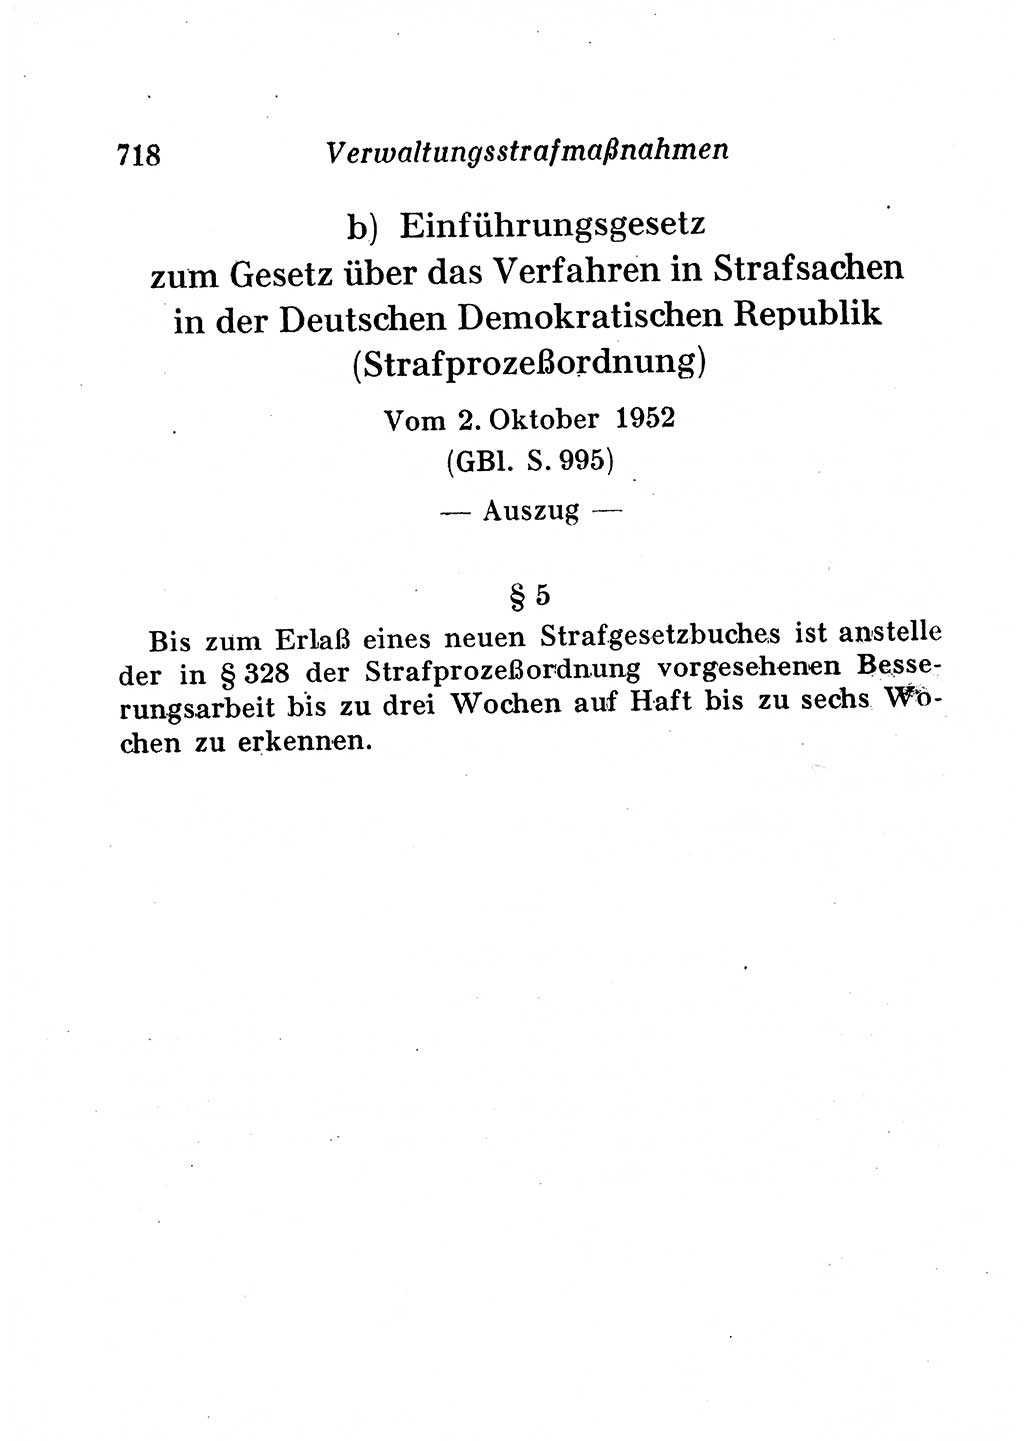 Staats- und verwaltungsrechtliche Gesetze der Deutschen Demokratischen Republik (DDR) 1958, Seite 718 (StVerwR Ges. DDR 1958, S. 718)